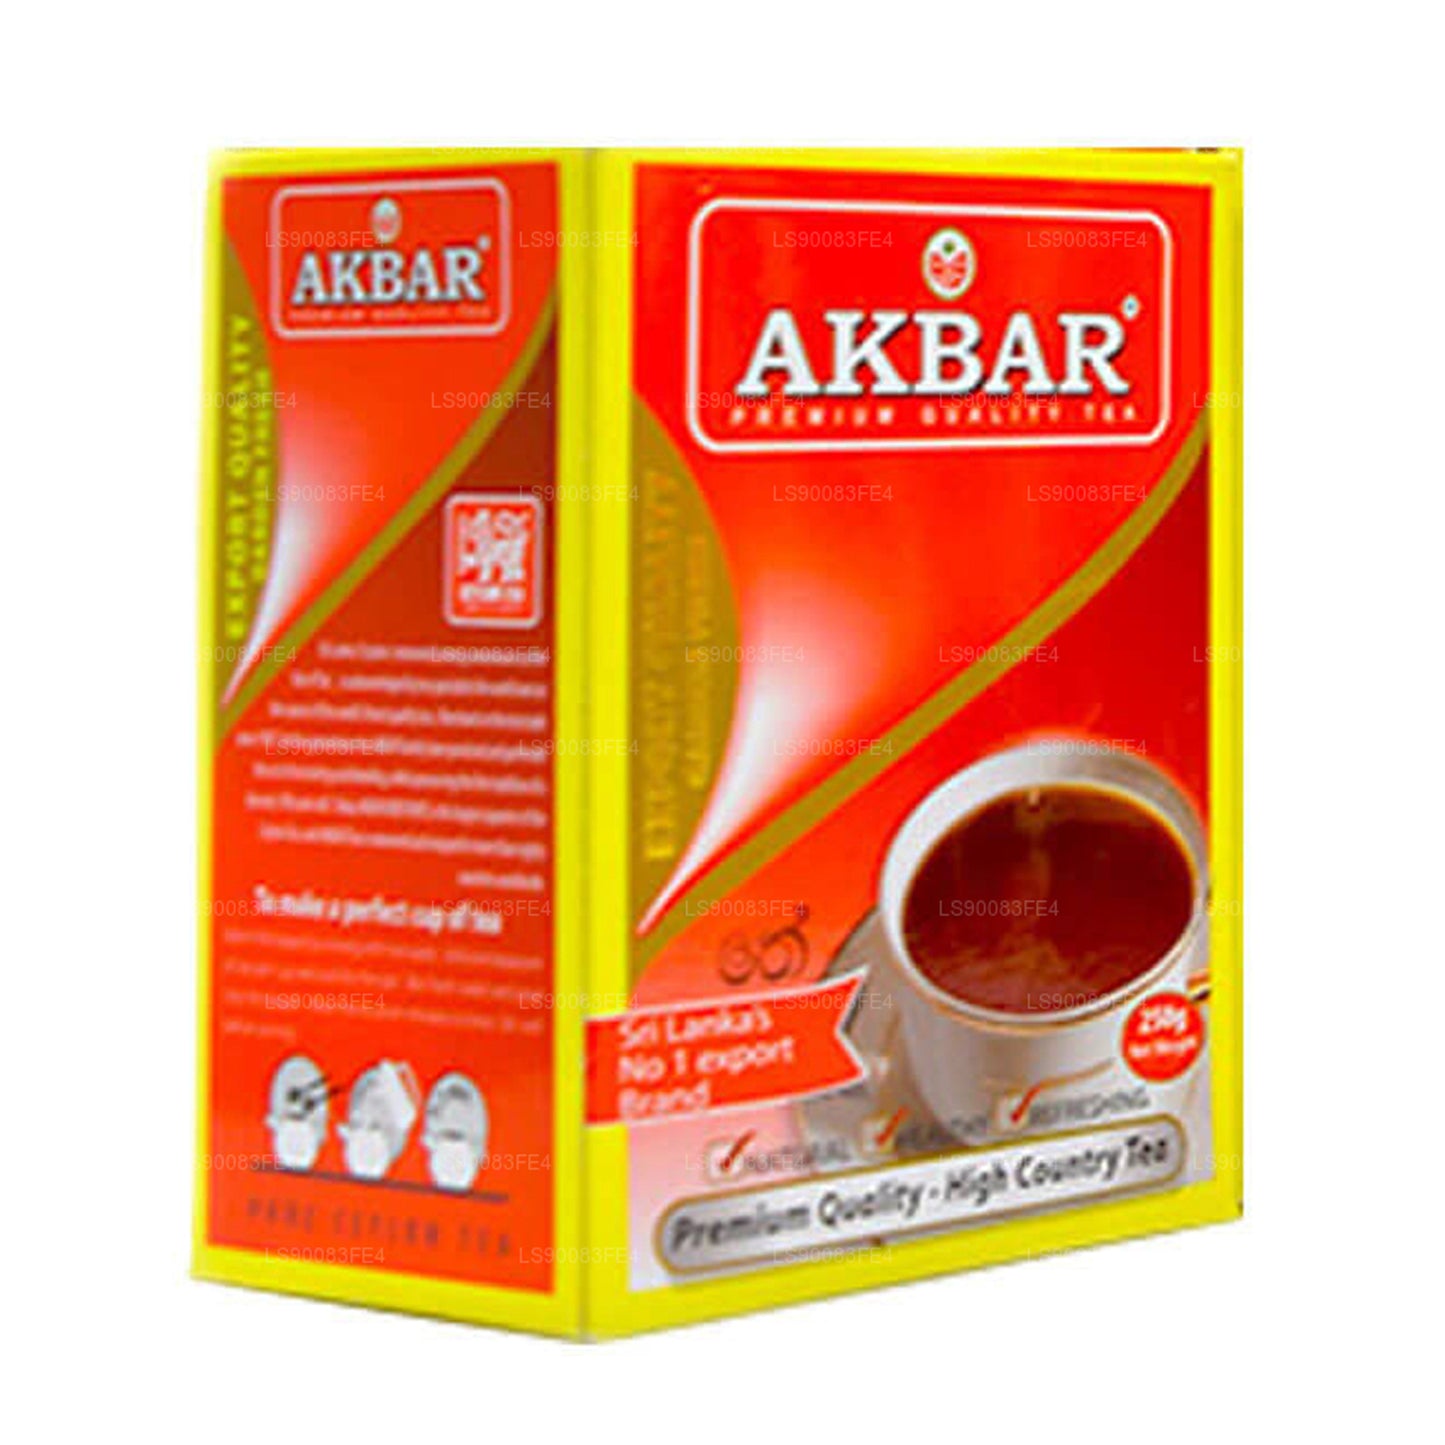 Akbar Premium Kalite Siyah Çay (250g)